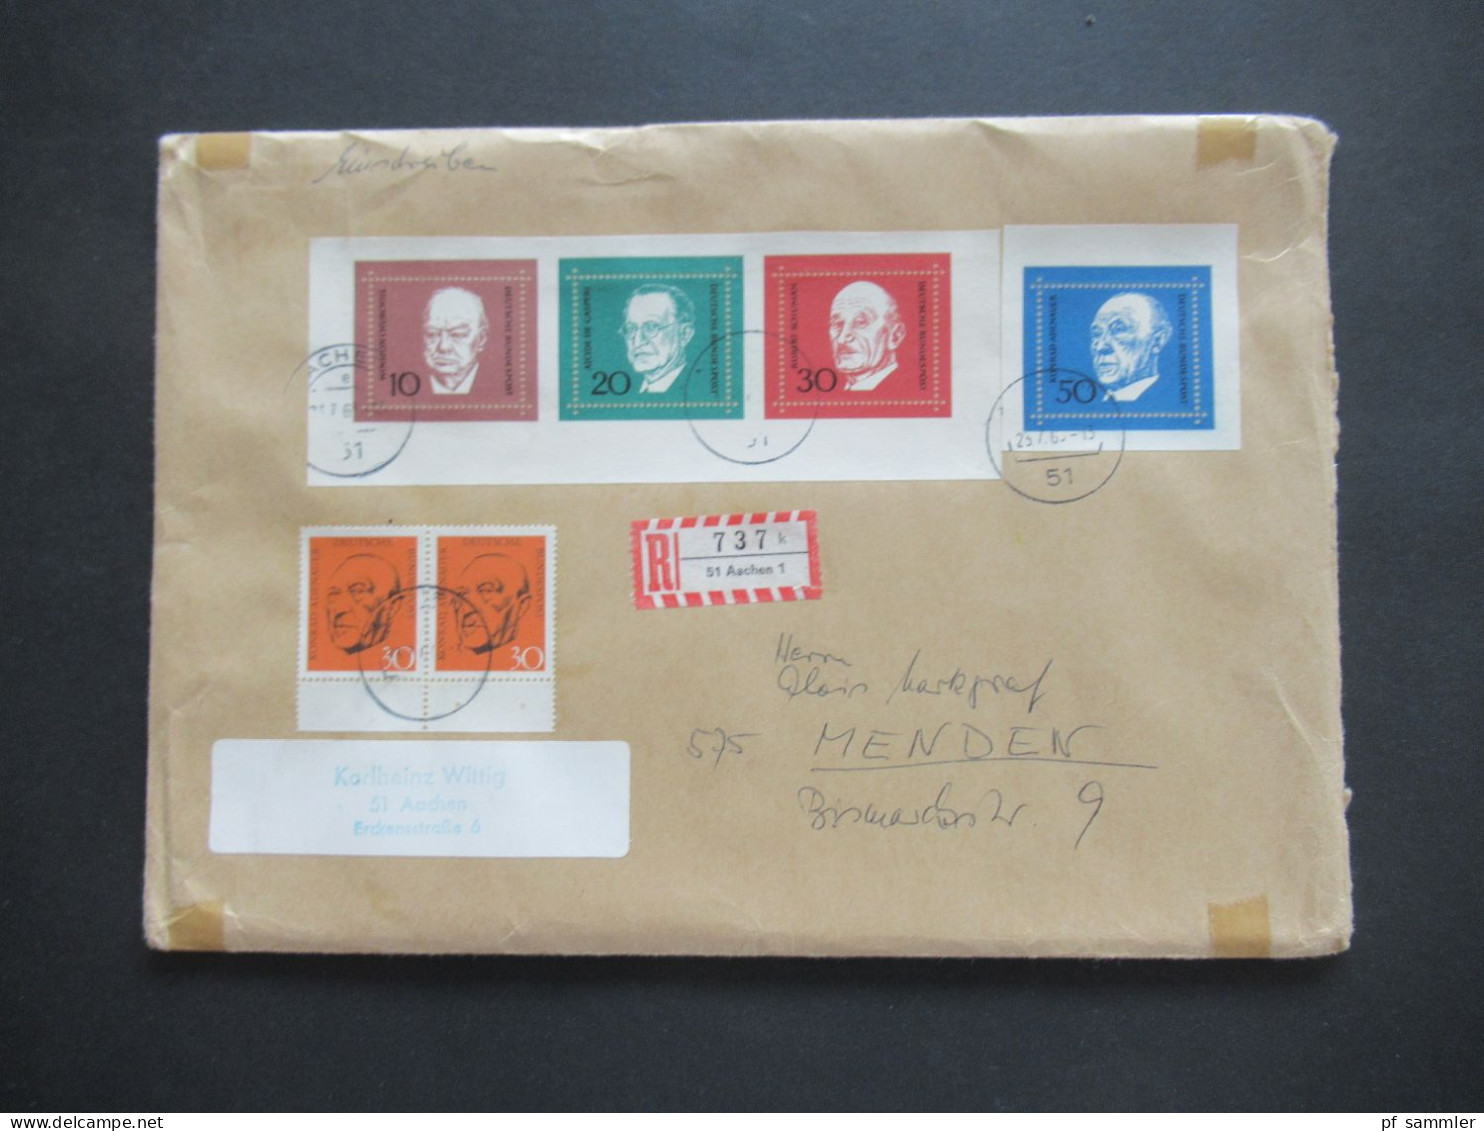 BRD 1968 Block 4 kleiner Belegeposten mit 12x FDC als Einschreiben und 1x Blockeinzelmarken + Block auf gr. Briefstück